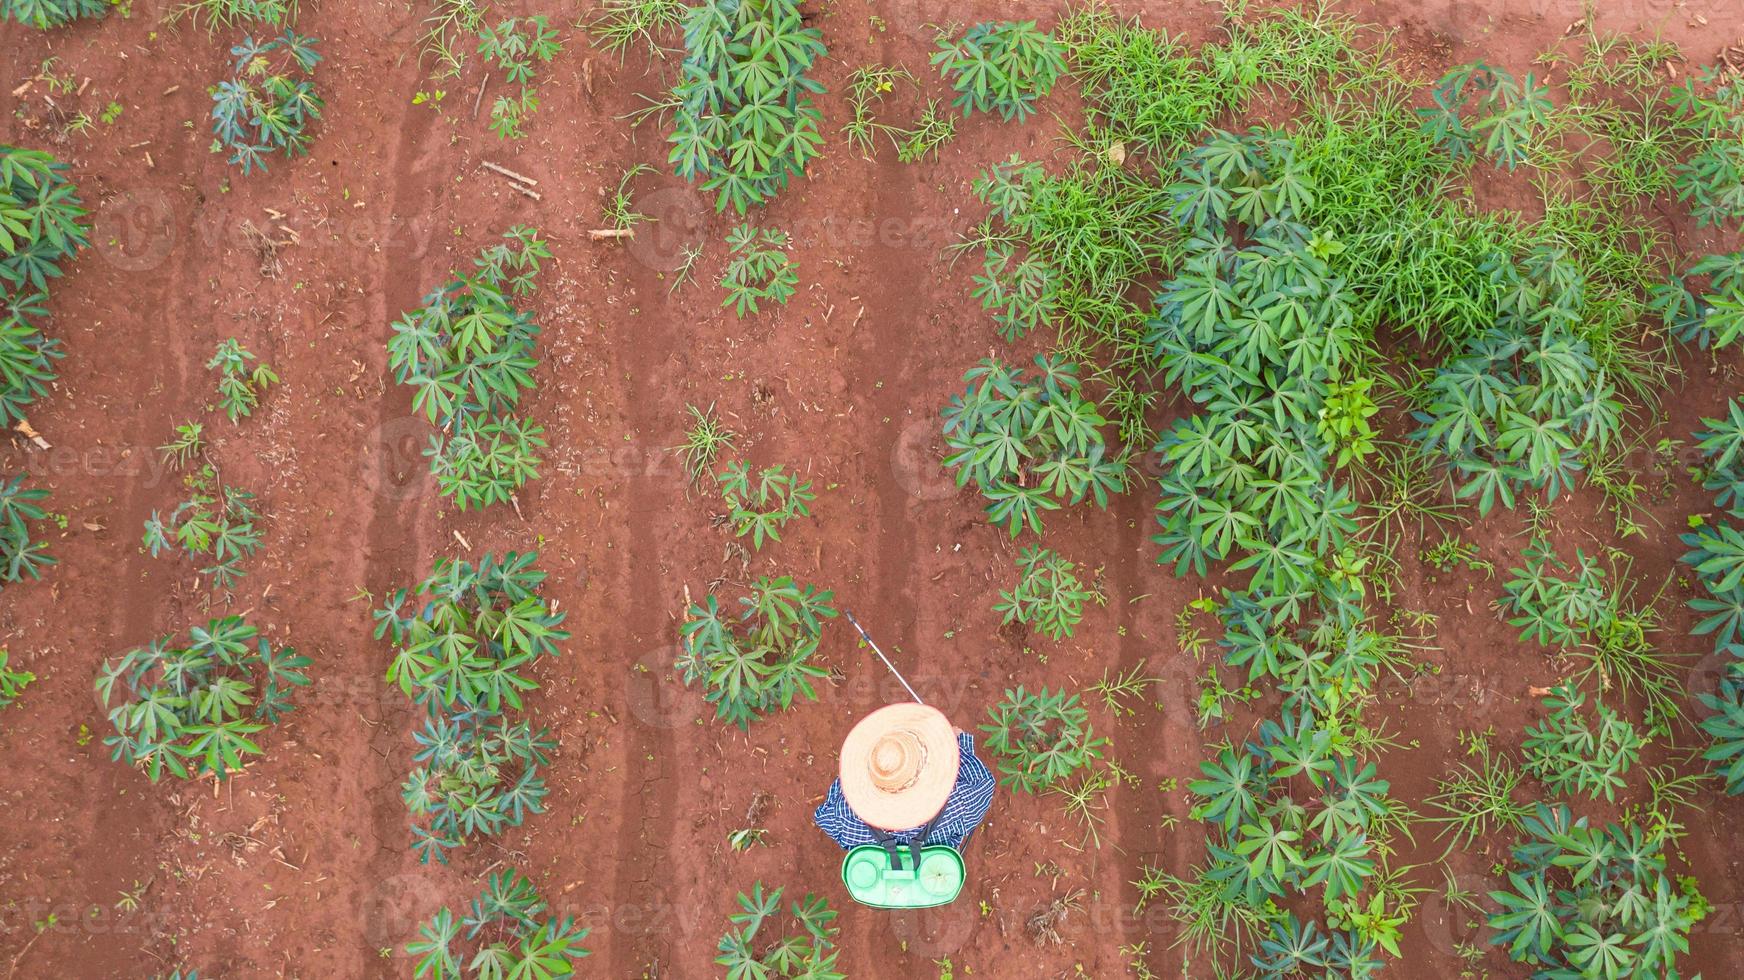 Vue aérienne de dessus des agriculteurs travaillant sur la ferme de manioc photo